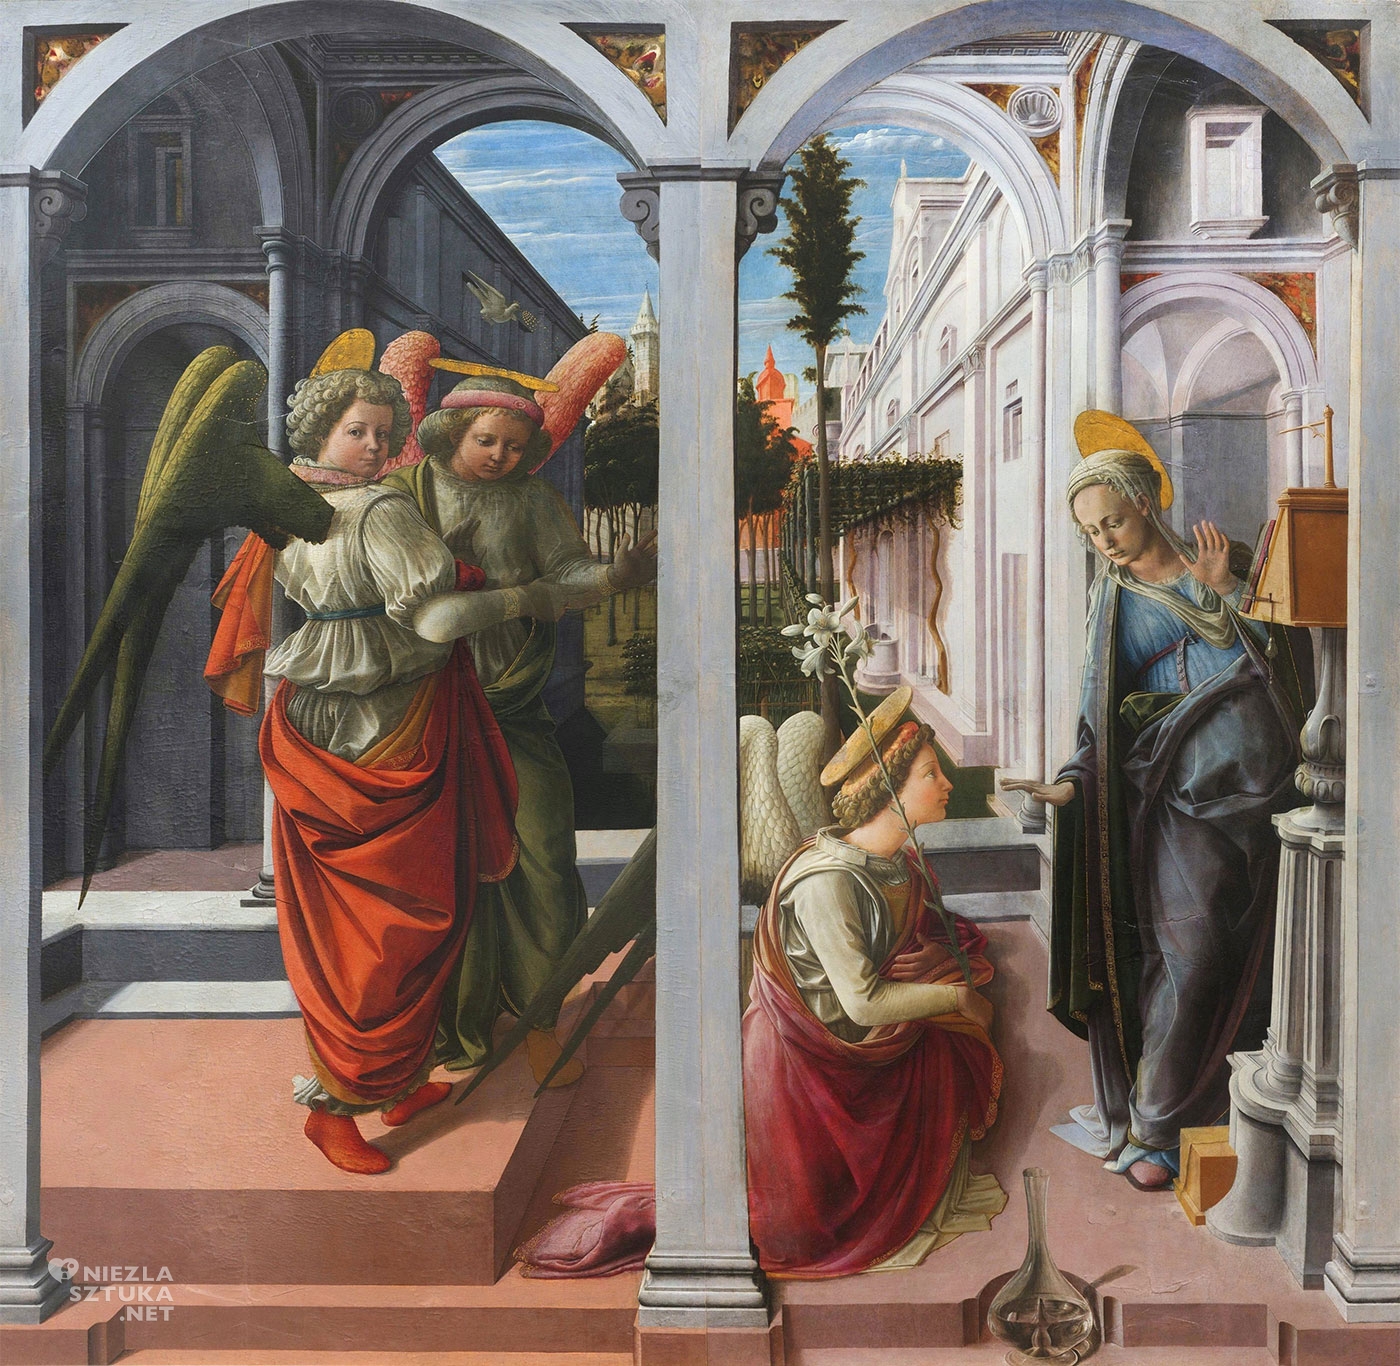 Fra Filippo Lippi, Zwiastowanie, sztuka włoska, malarstwo włoskie, renesans, Niezła Sztuka